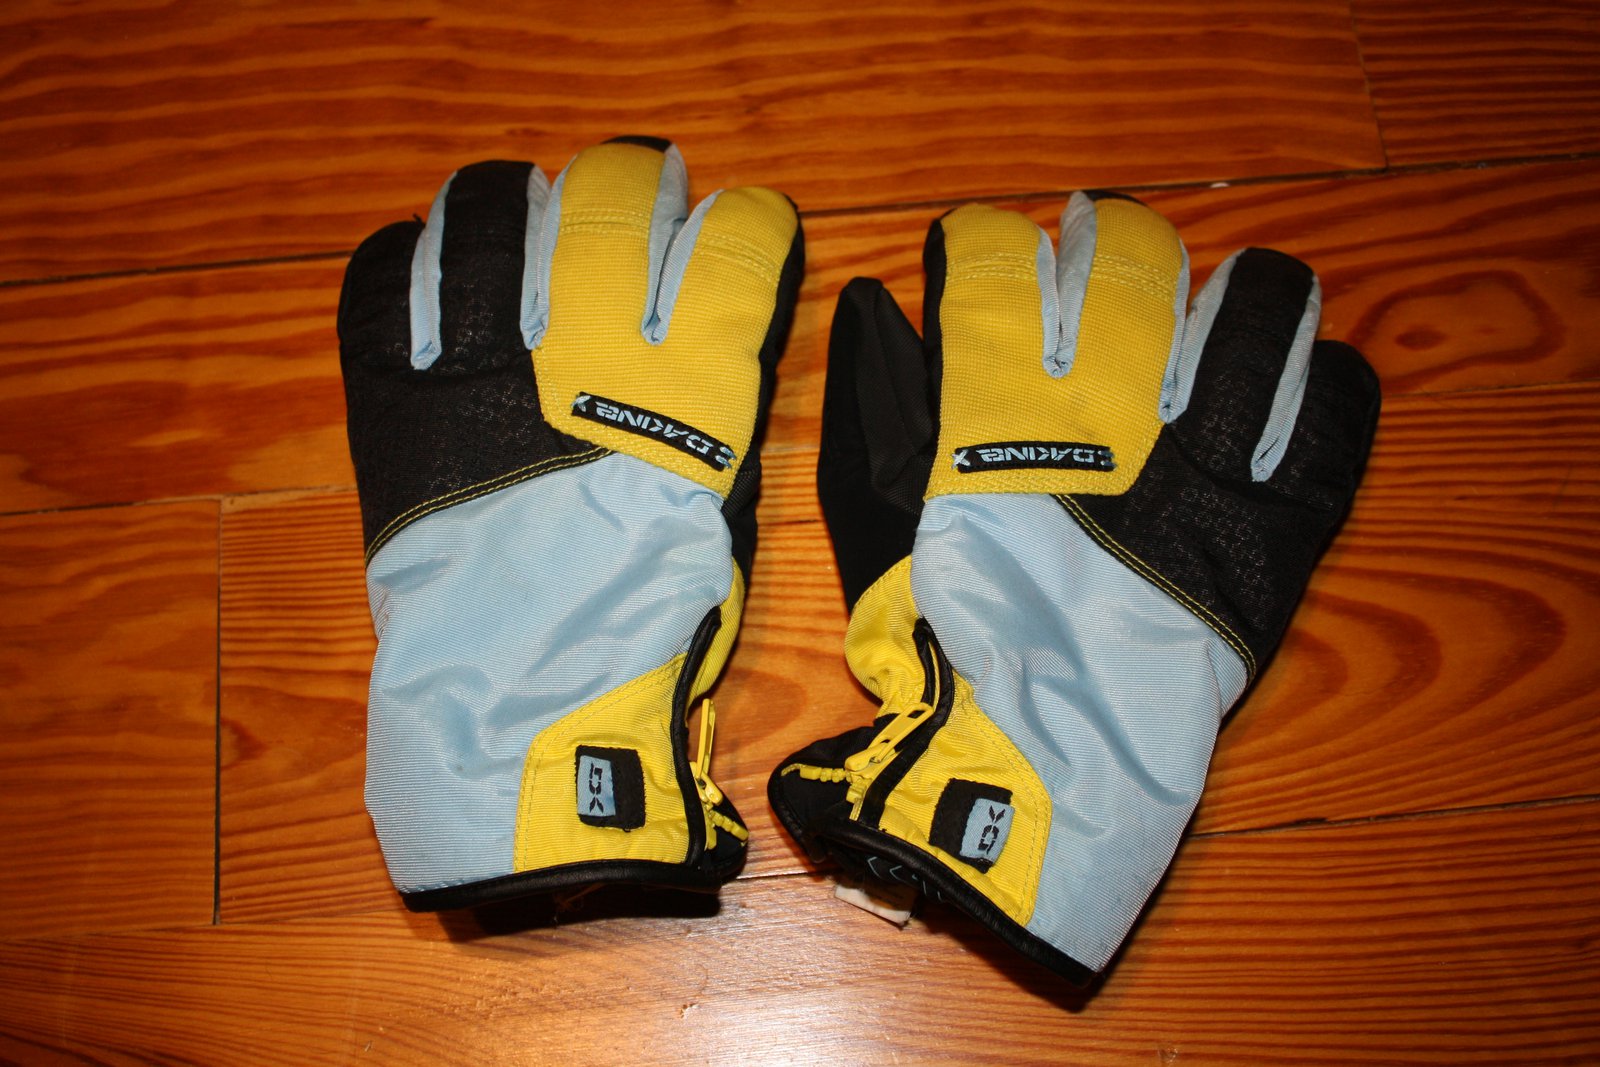 Dakine Bronco Gloves